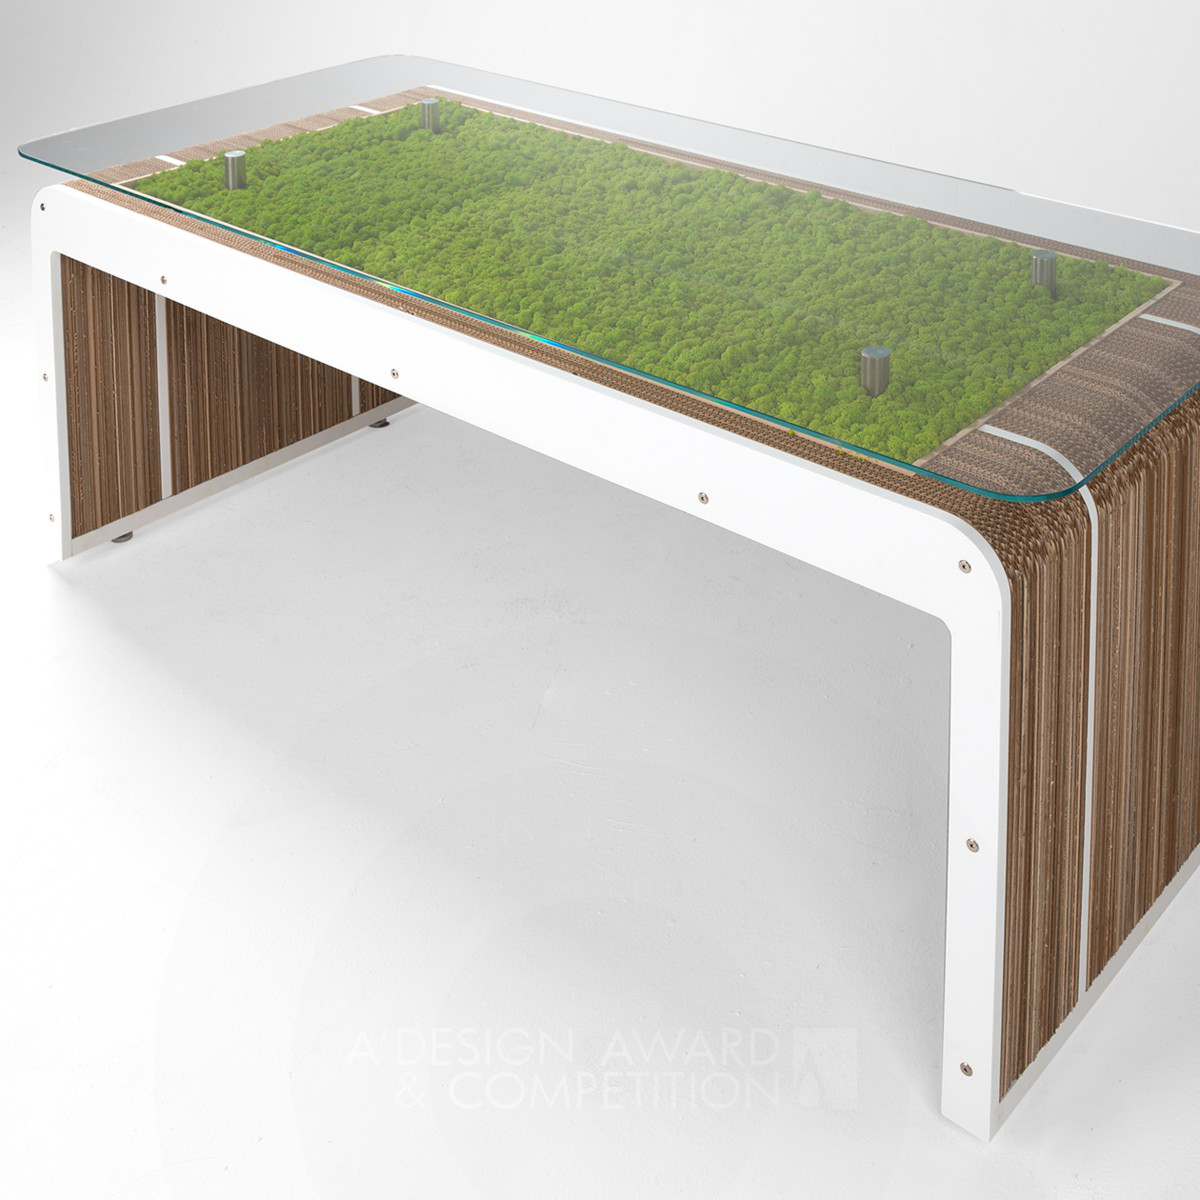 MorePlusDesk with moss Table by Giorgio Caporaso